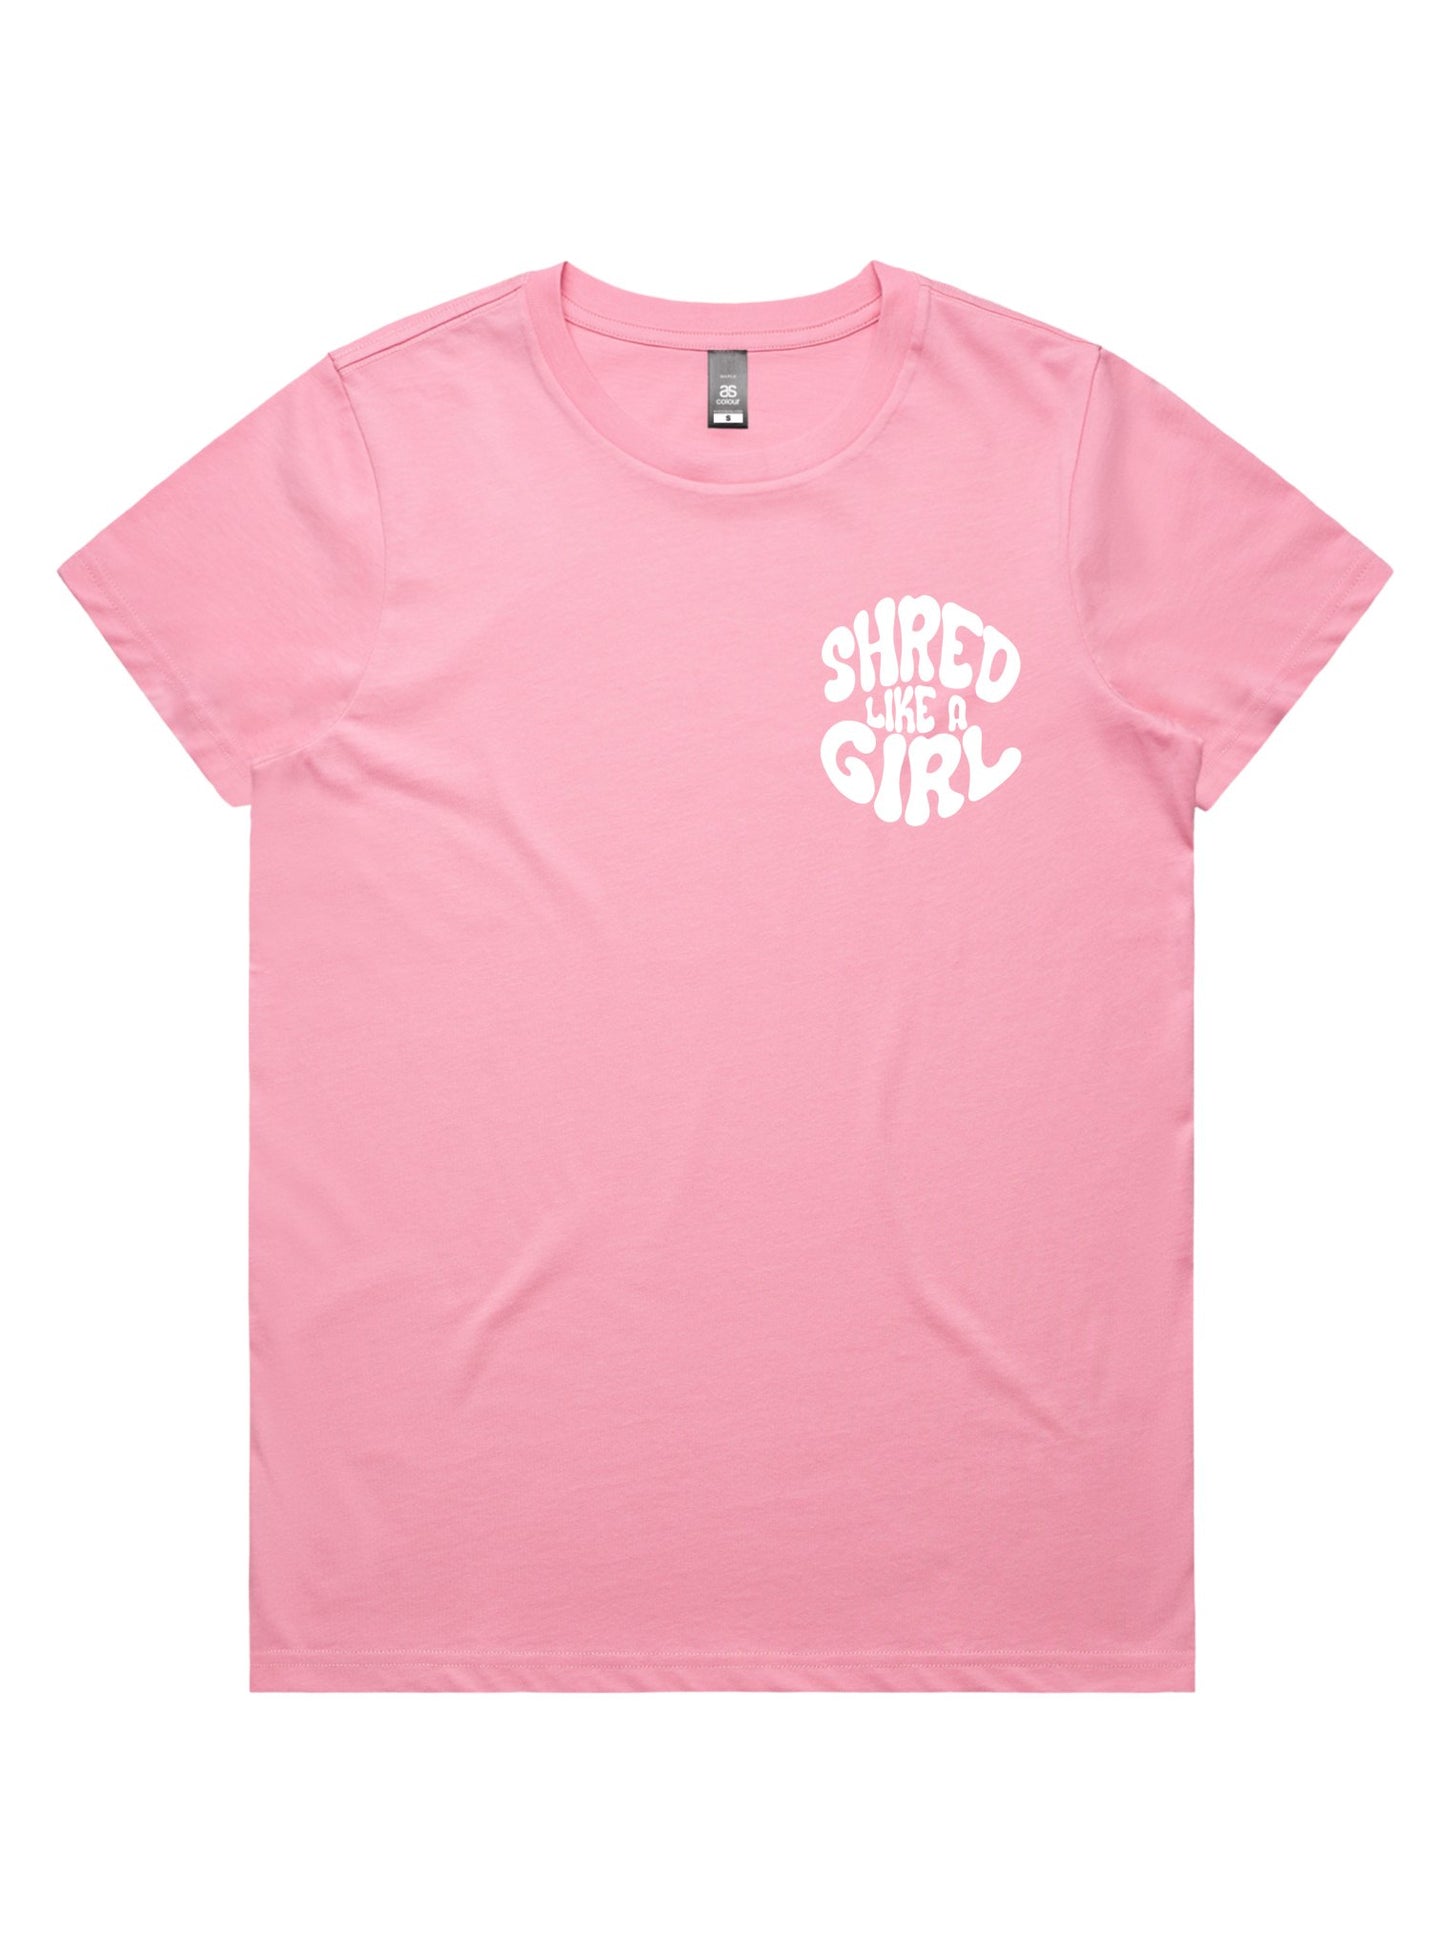 Share Stoke Tee | Pink - Shred Like a Girl